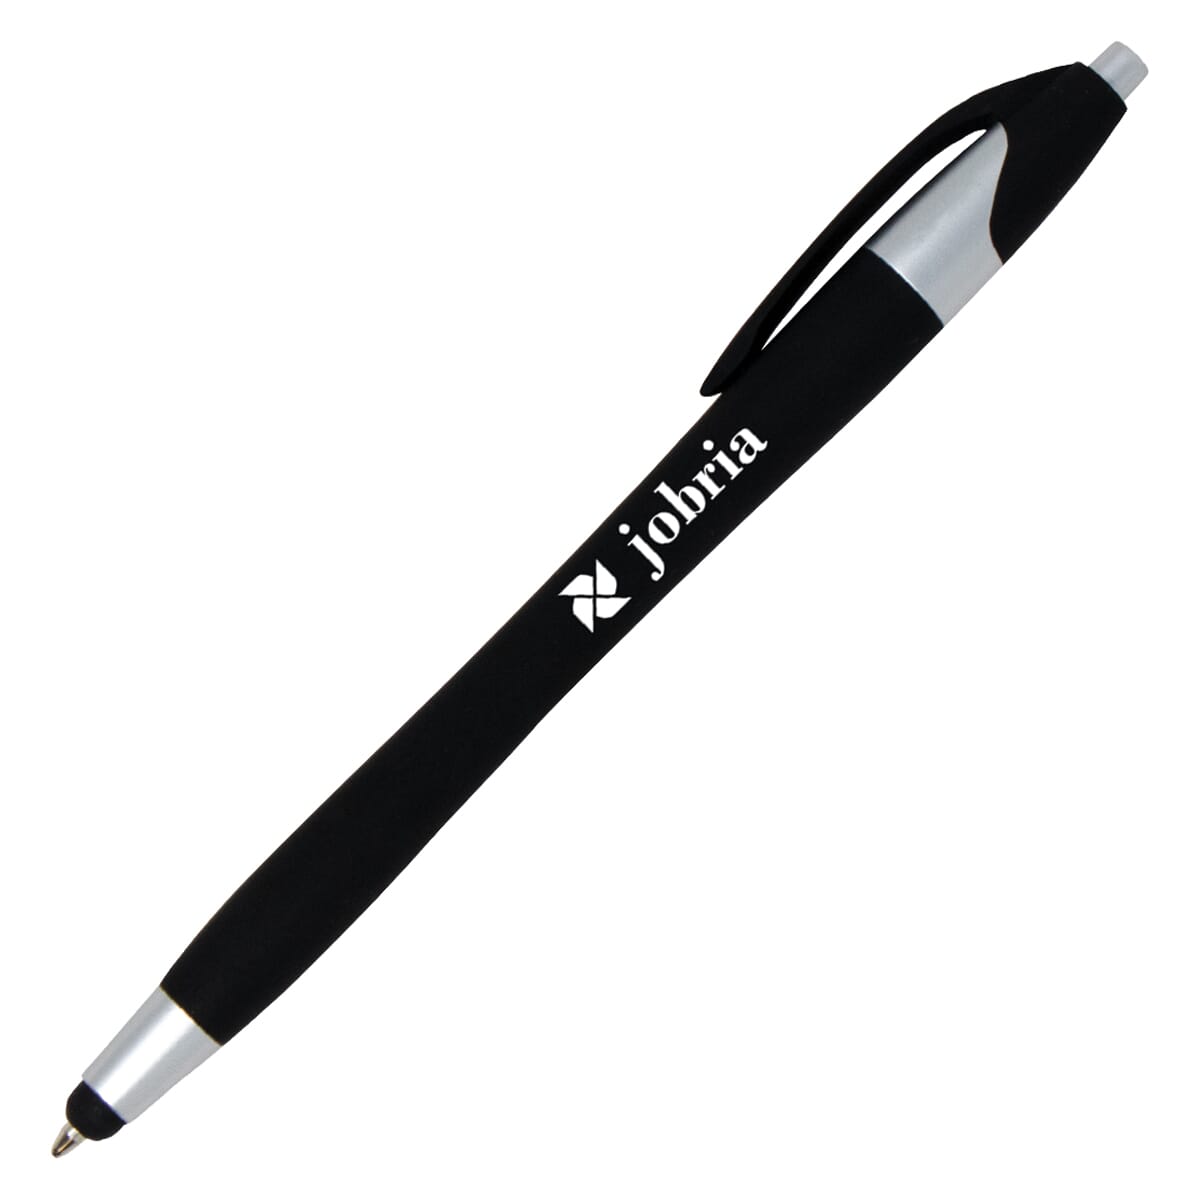 Metallic stylus pen